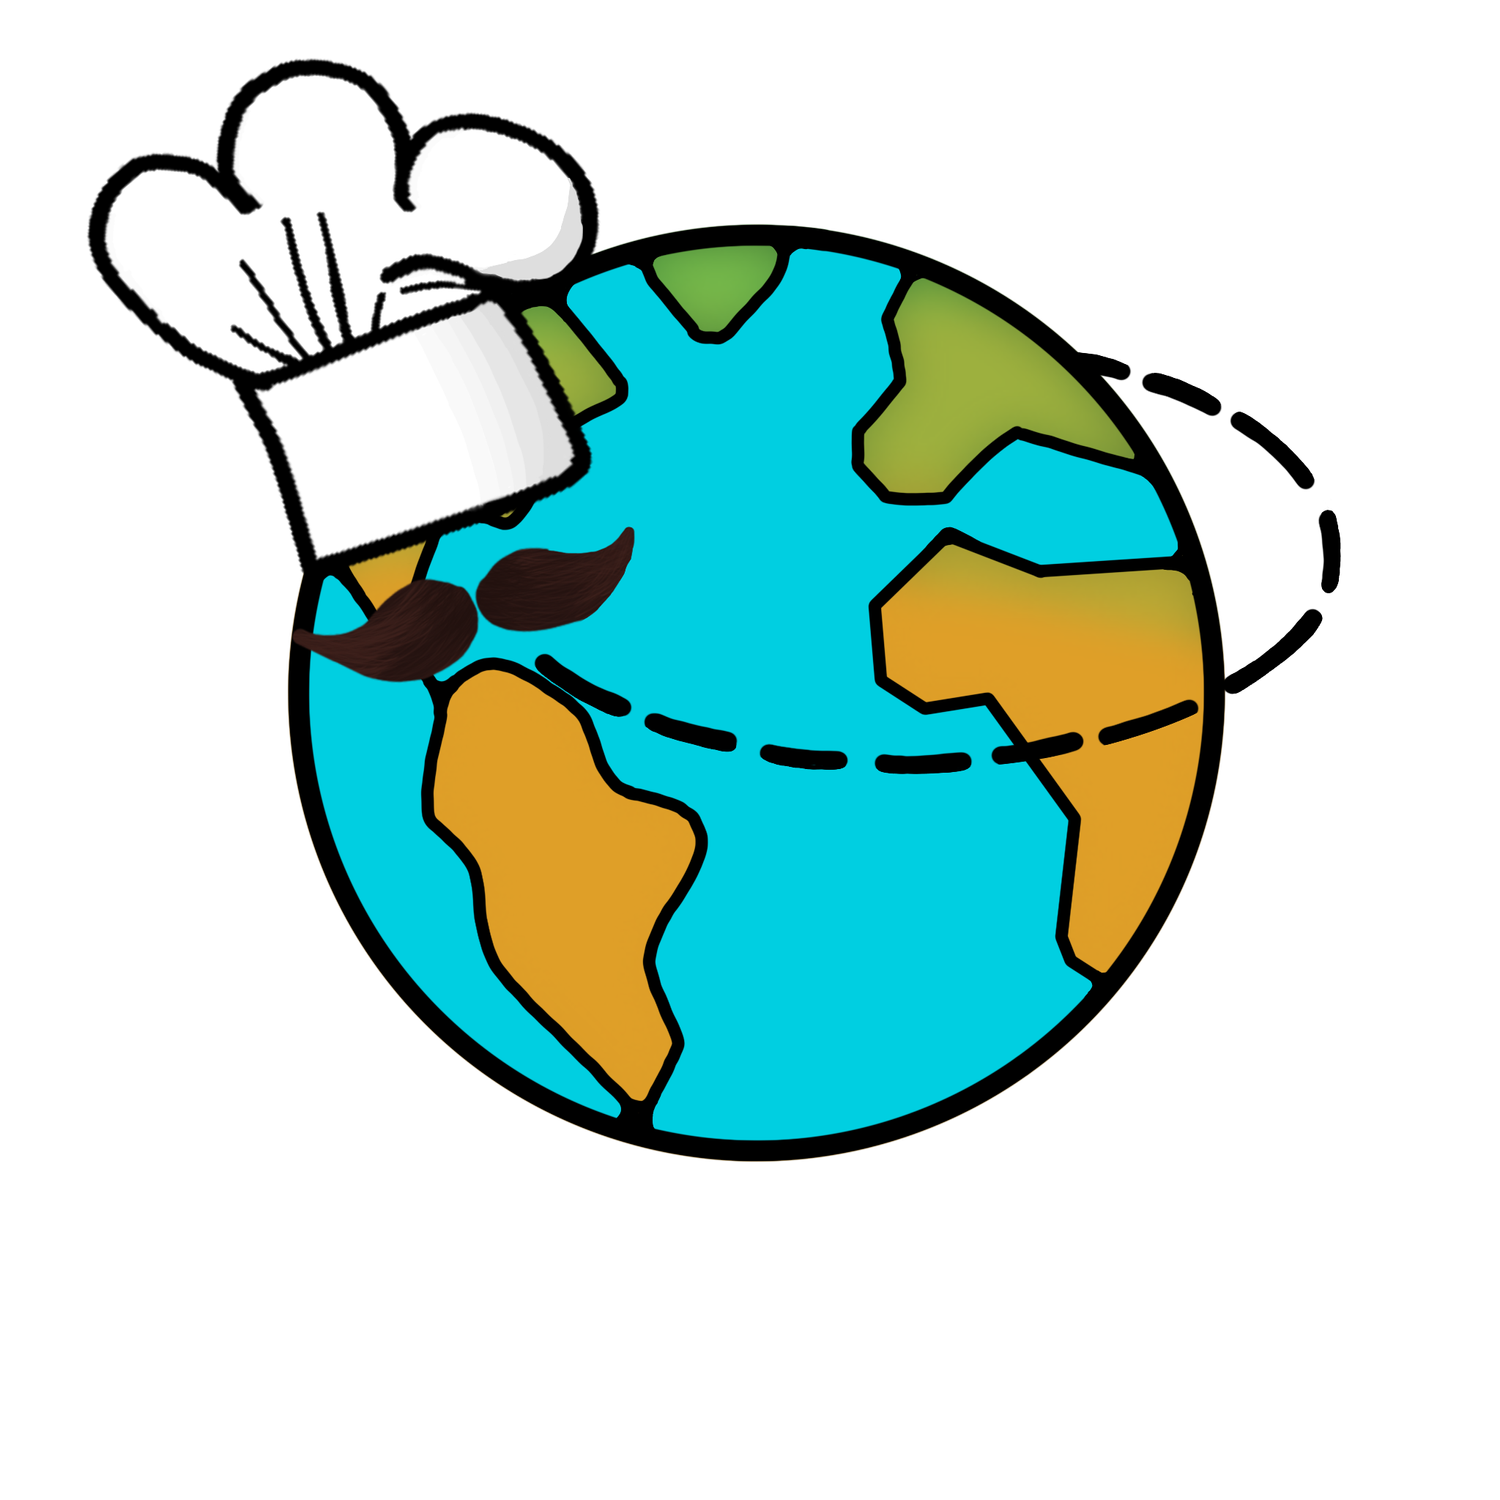 Around the world kitchen - Online Kochkurse aus aller Welt. Best Online cooking classes around the world